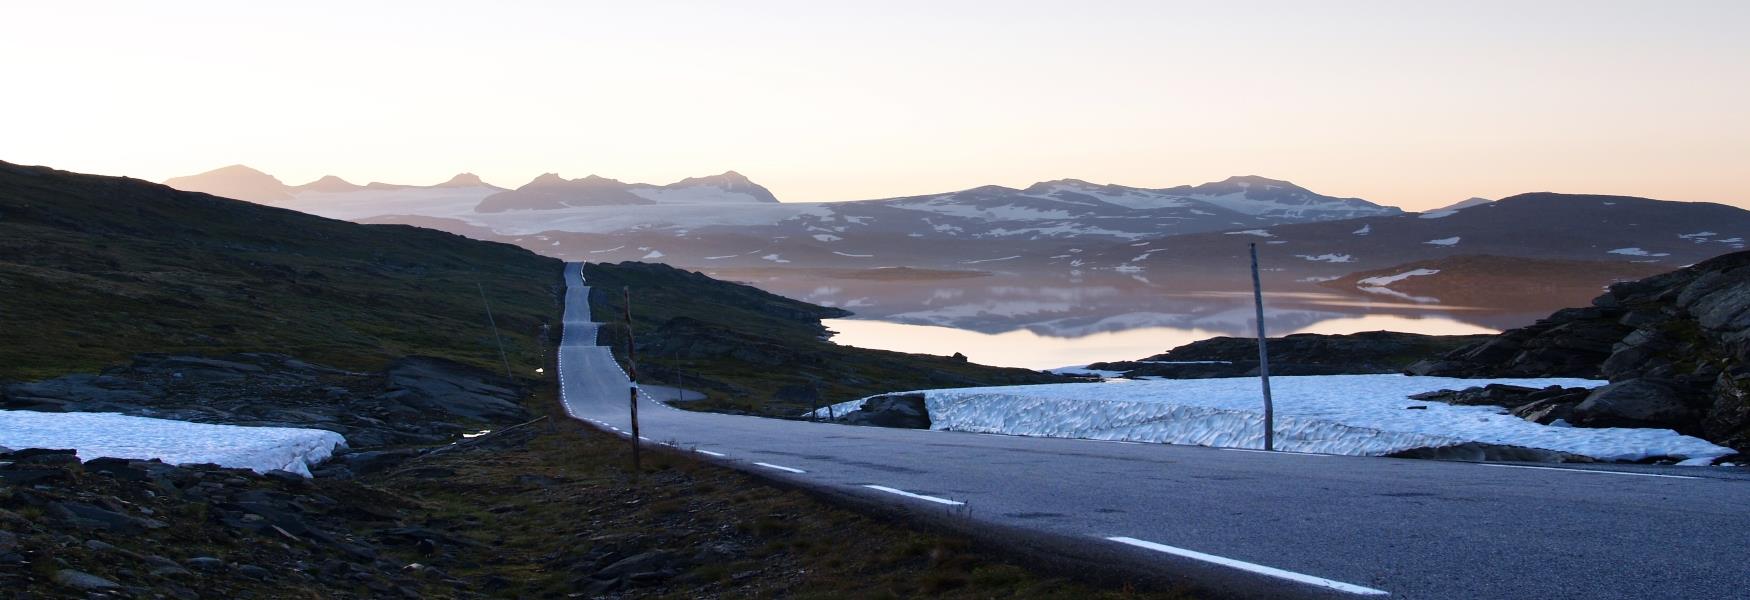 Die Norwegische Landschaftsroute Sognefjellet